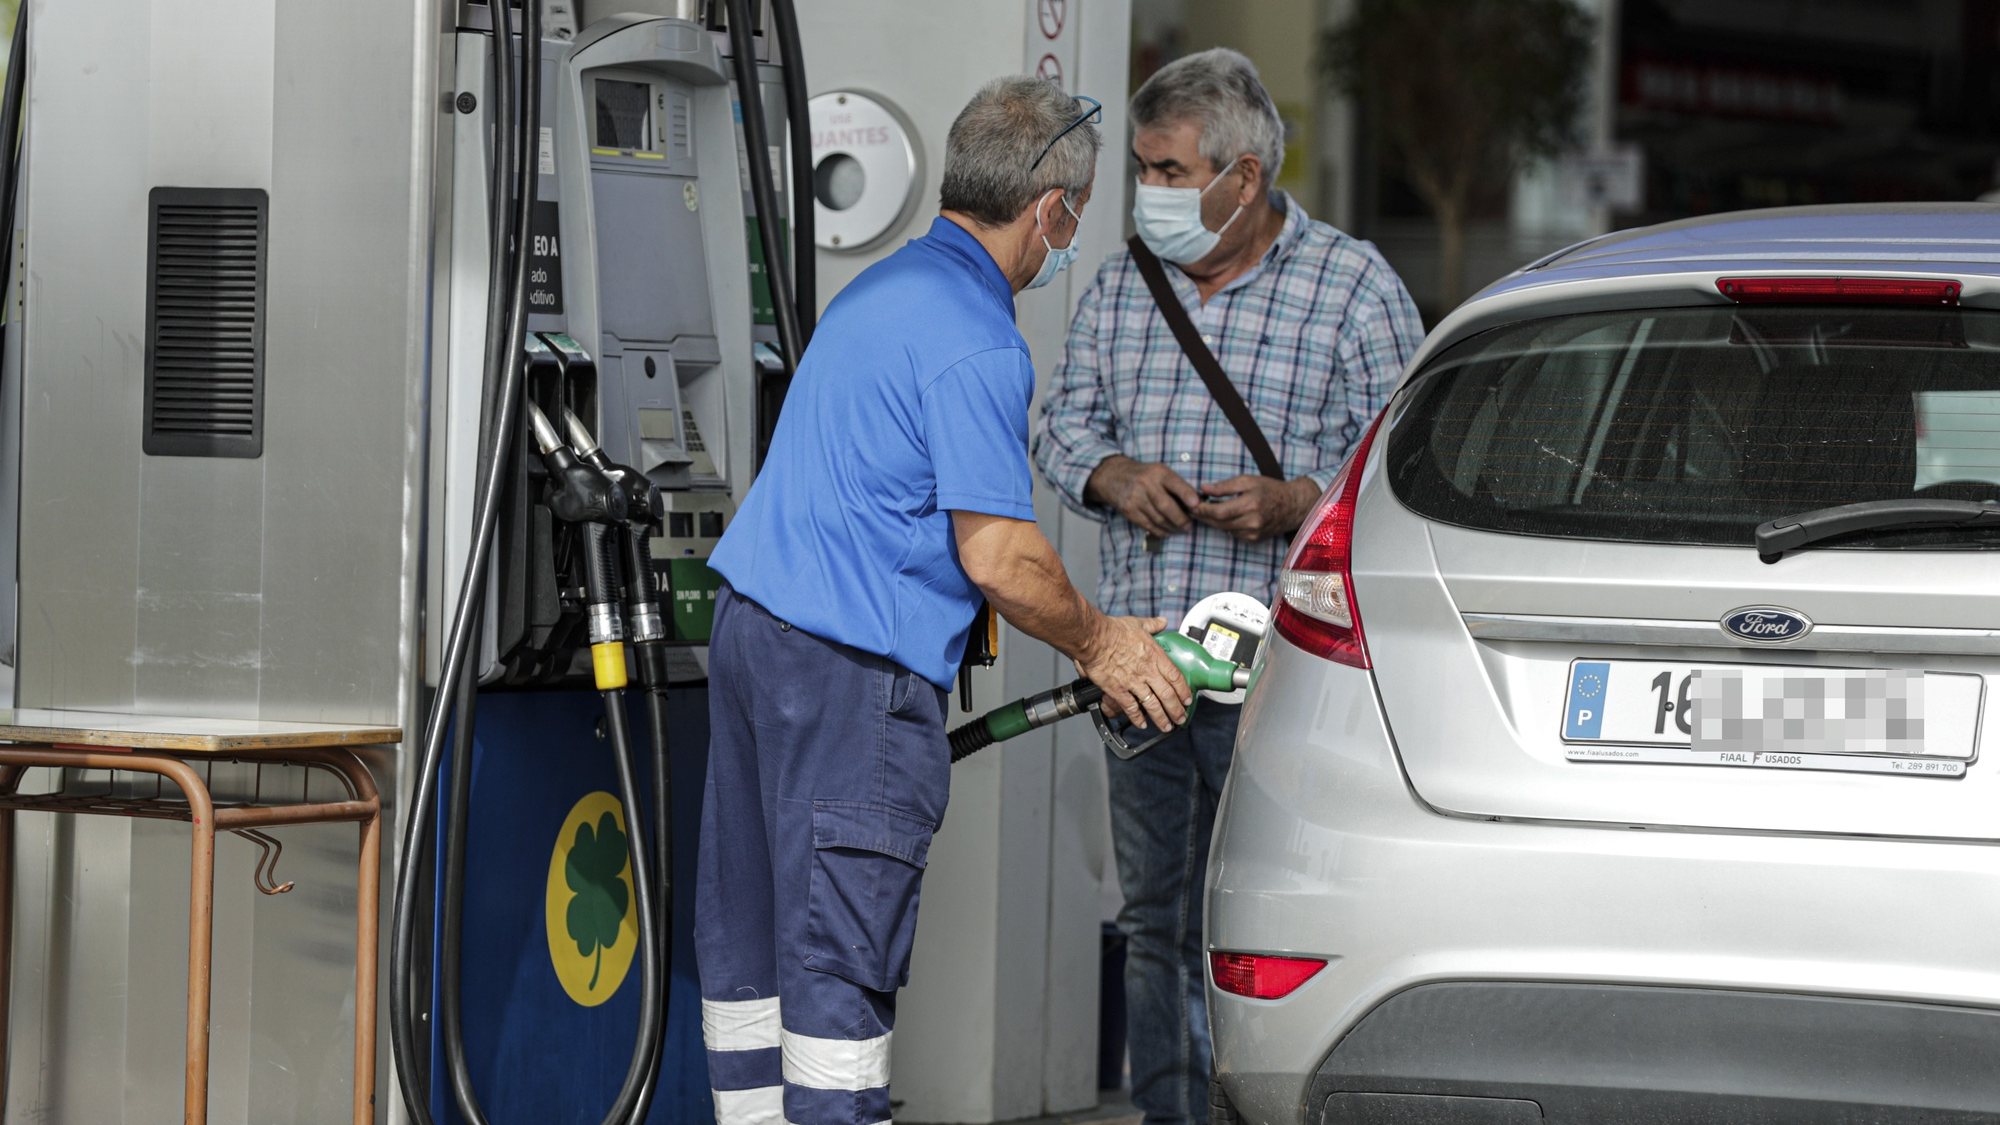 Automobilistas portugueses abastecem em Espanha para fugir aos preços altos dos combustíveis em Portugal e vão abastecer a Espanha, onde a diferença pode chegar aos 36 cêntimos por litro, em Ayamonte, Espanha, 17 de outubro de 2021. (ACOMPANHA TEXTO). LUÍS FORRA/LUSA